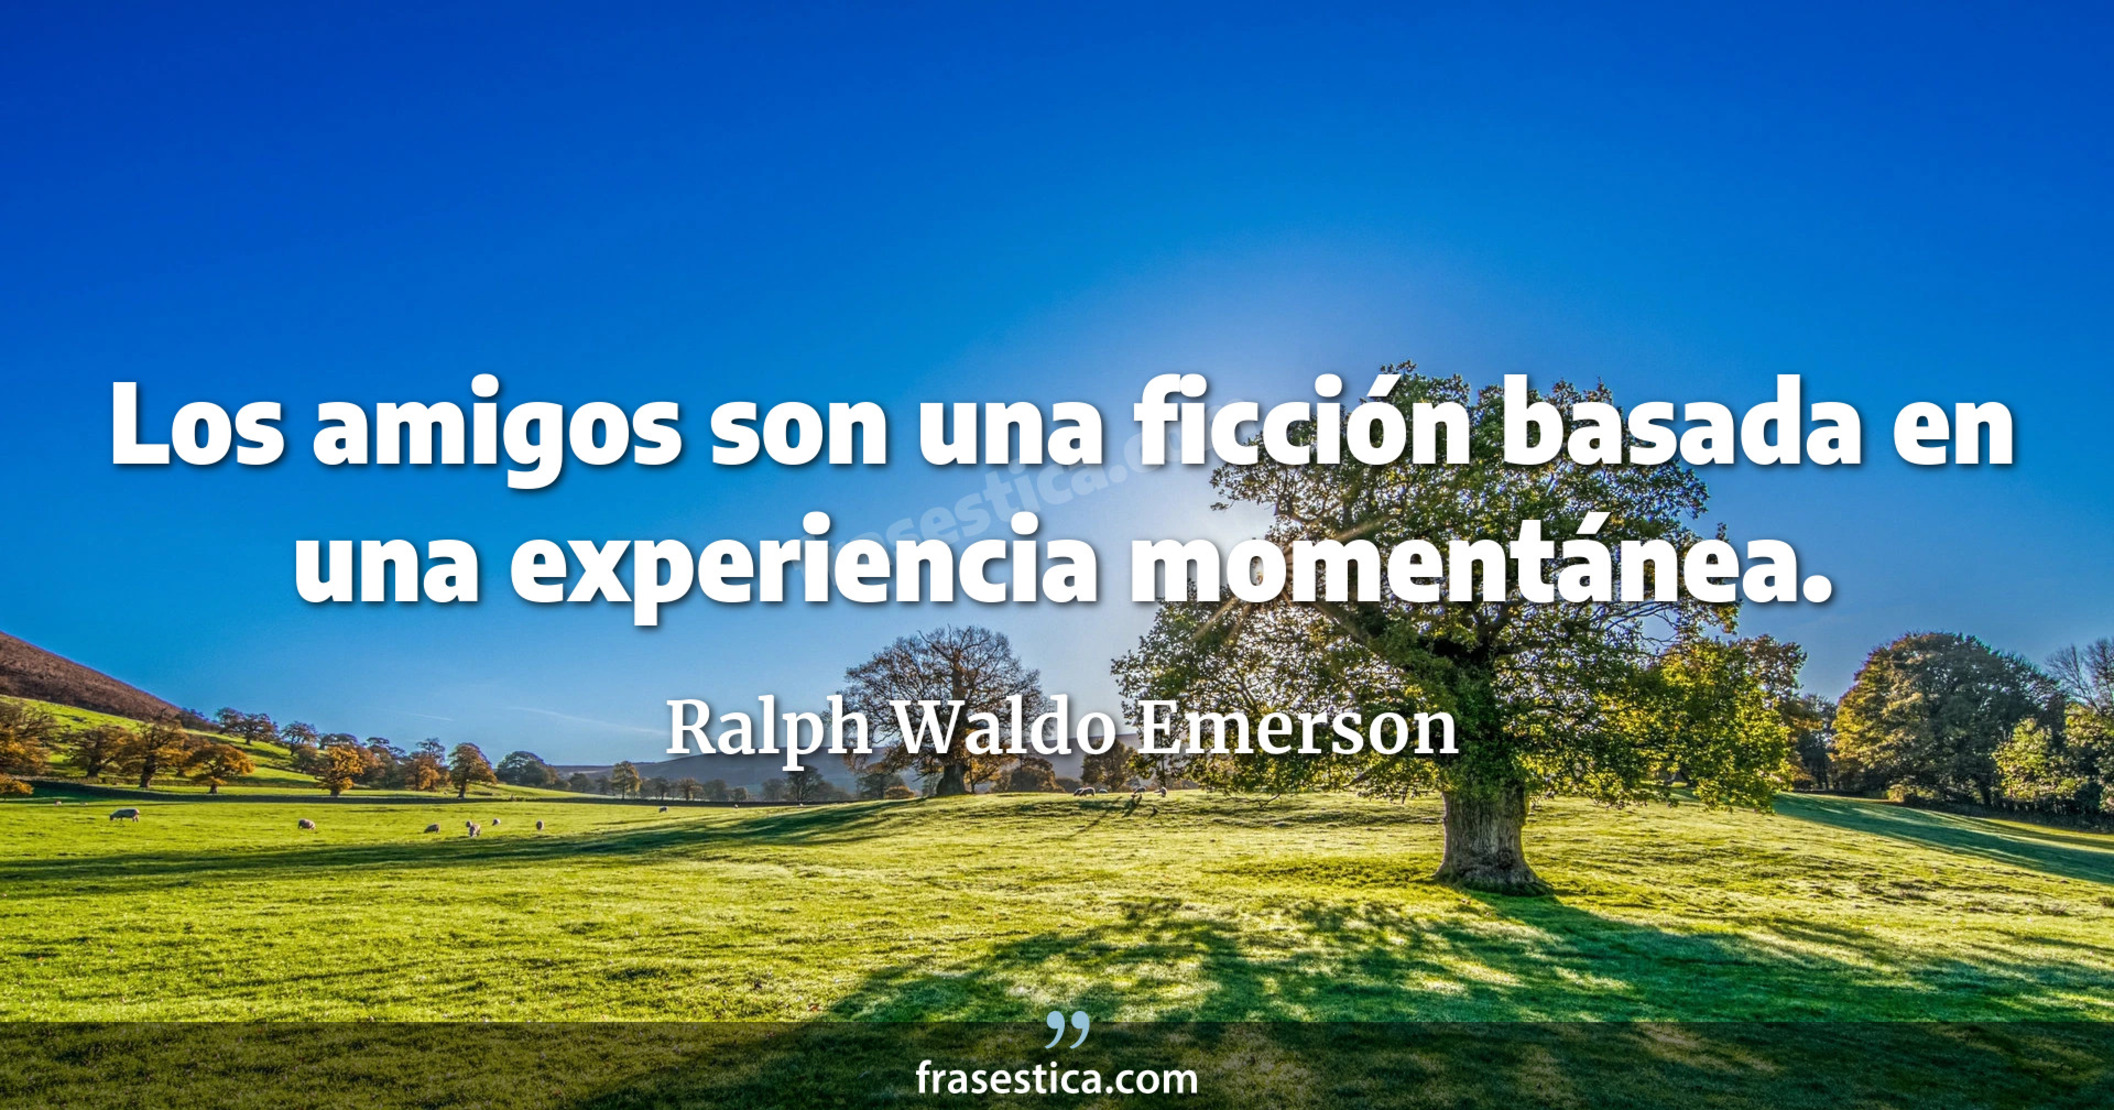 Los amigos son una ficción basada en una experiencia momentánea. - Ralph Waldo Emerson